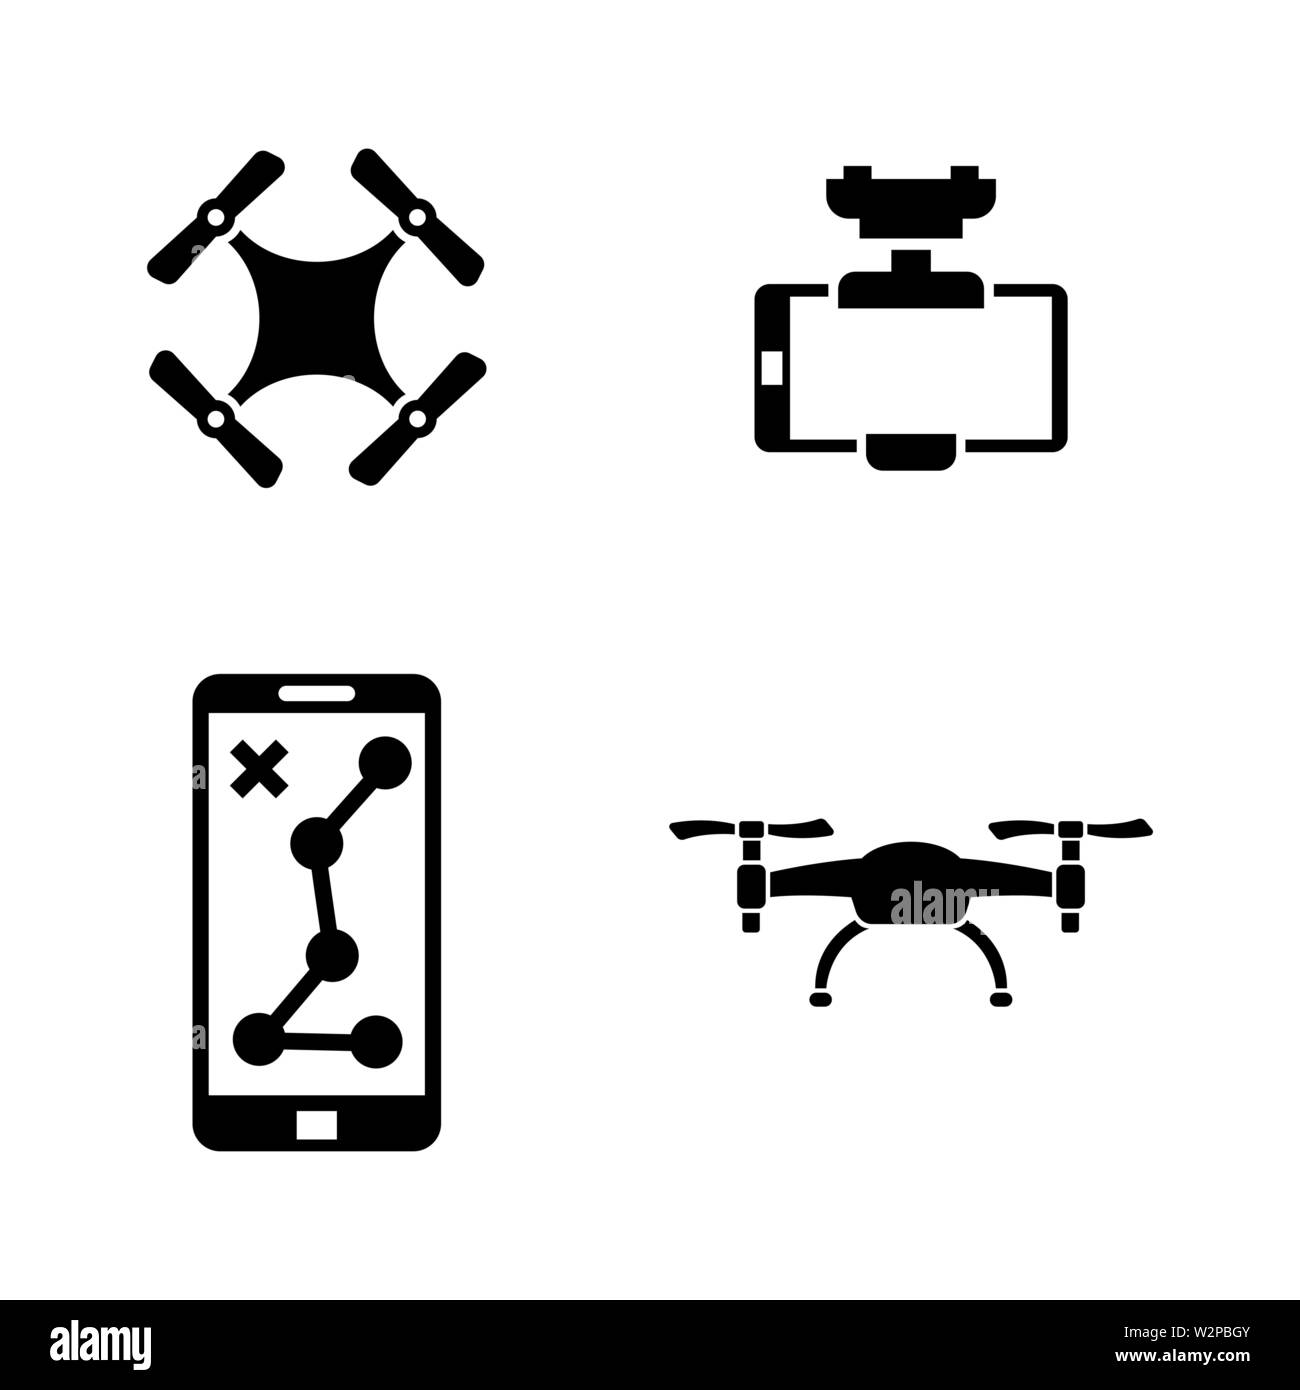 Drone. Einfache ergänzende Vector Icons Set für Video, Mobile Anwendungen, Websites, Print Projekte und ihre Gestaltung. Abbildung schwarz auf weißem Hintergrund. Stock Vektor